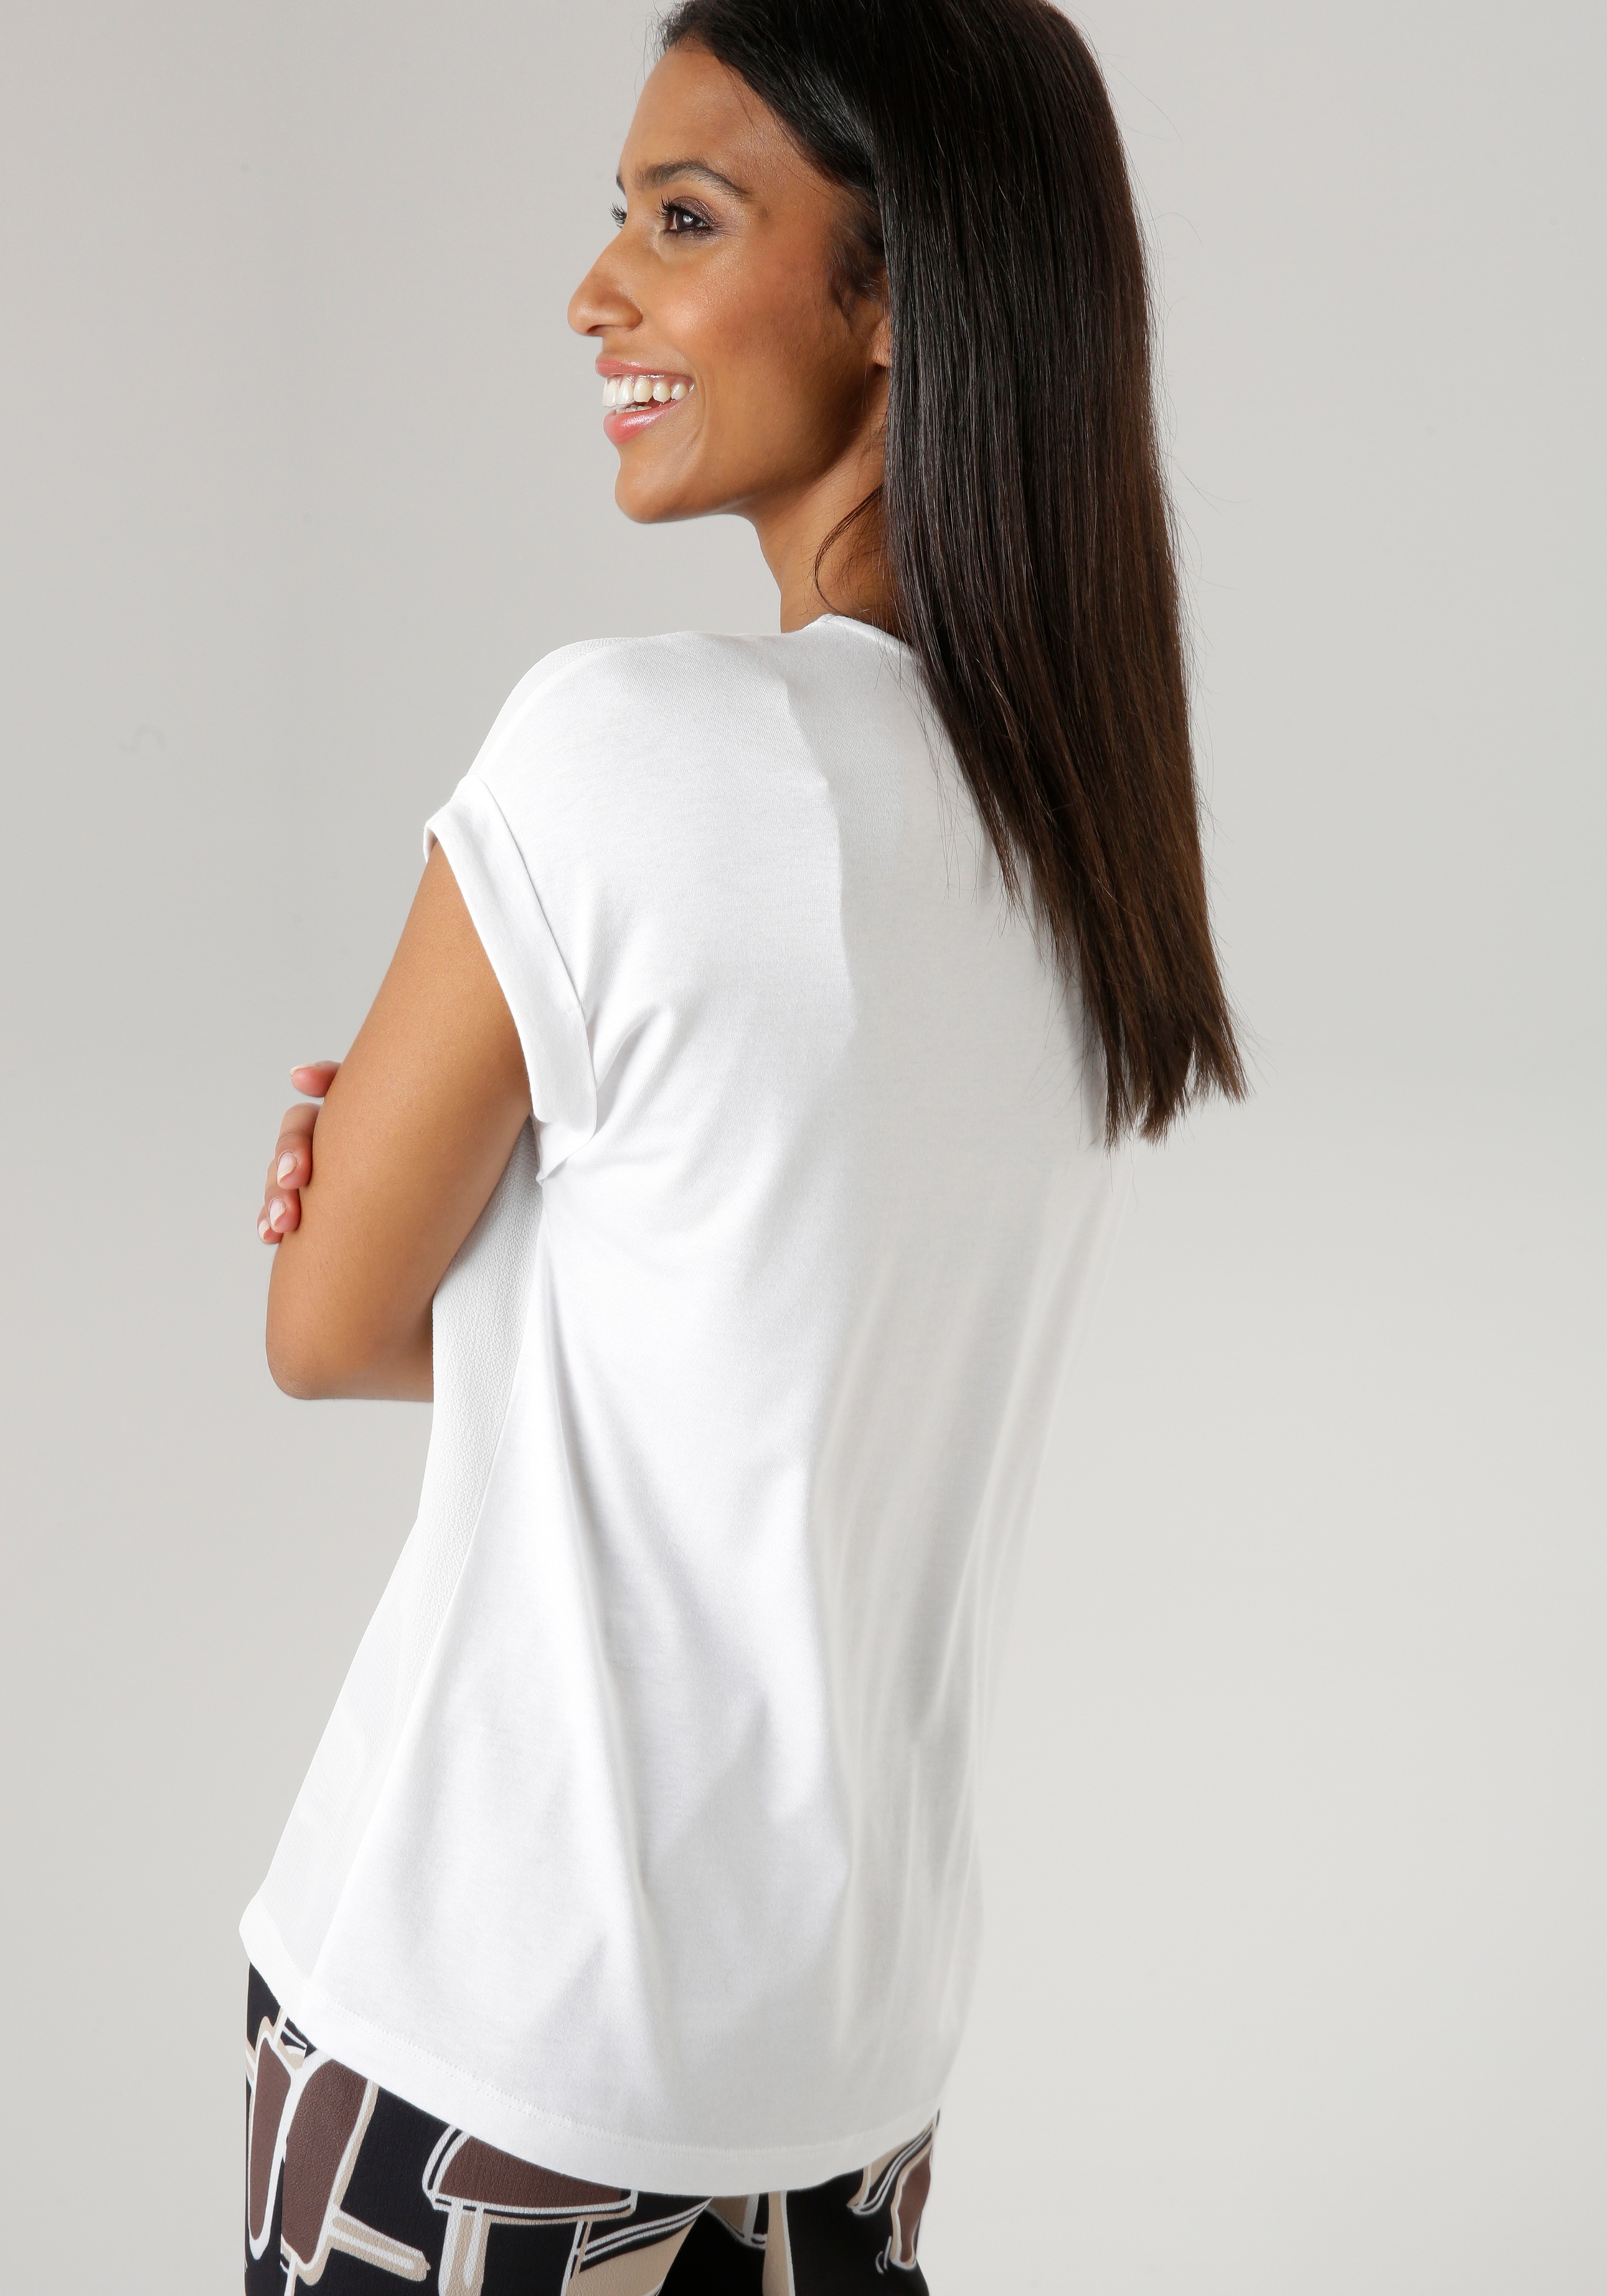 bestellen KOLLEKTION SELECTED NEUE | BAUR online Aniston mit Shirtbluse, angeschnittenen Ärmeln -